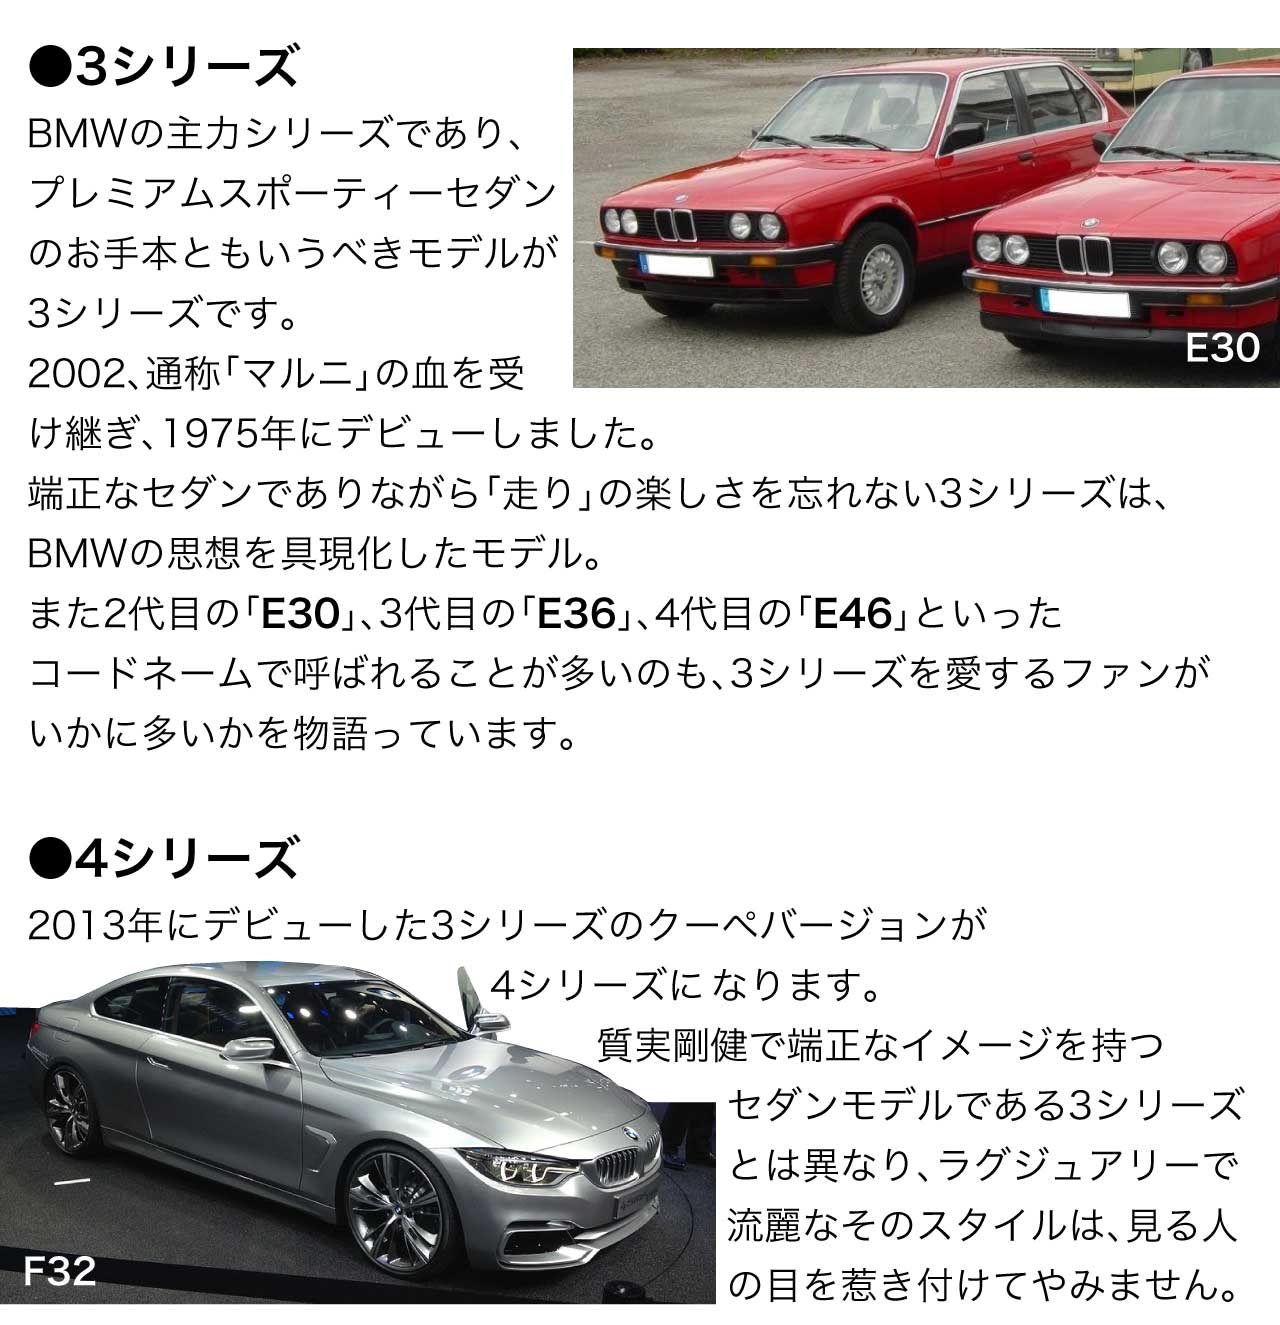 3シリーズBMWの主力シリーズであり、プレミアムスポーティーセダンのお手本ともいうべきモデルが3シリーズです。2002、通称「マルニ」の血を受け継ぎ、1975年にデビューしました。端正なセダンでありながら「走り」の楽しさを忘れない3シリーズは、BMWの思想を具現化したモデル。また2代目の「E30」、3代目の「E36」、4代目の「E46」といったコードネームで呼ばれることが多いのも、3シリーズを愛するファンがいかに多いかを物語っています。 4シリーズ 2013年にデビューした3シリーズのクーペバージョンが4シリーズに、なります。質実剛健で端正なイメージを持つセダンモデルである3シリーズとは異なり、ラグジュアリーで流麗なそのスタイルは、見る人の目を惹き付けてやみません。